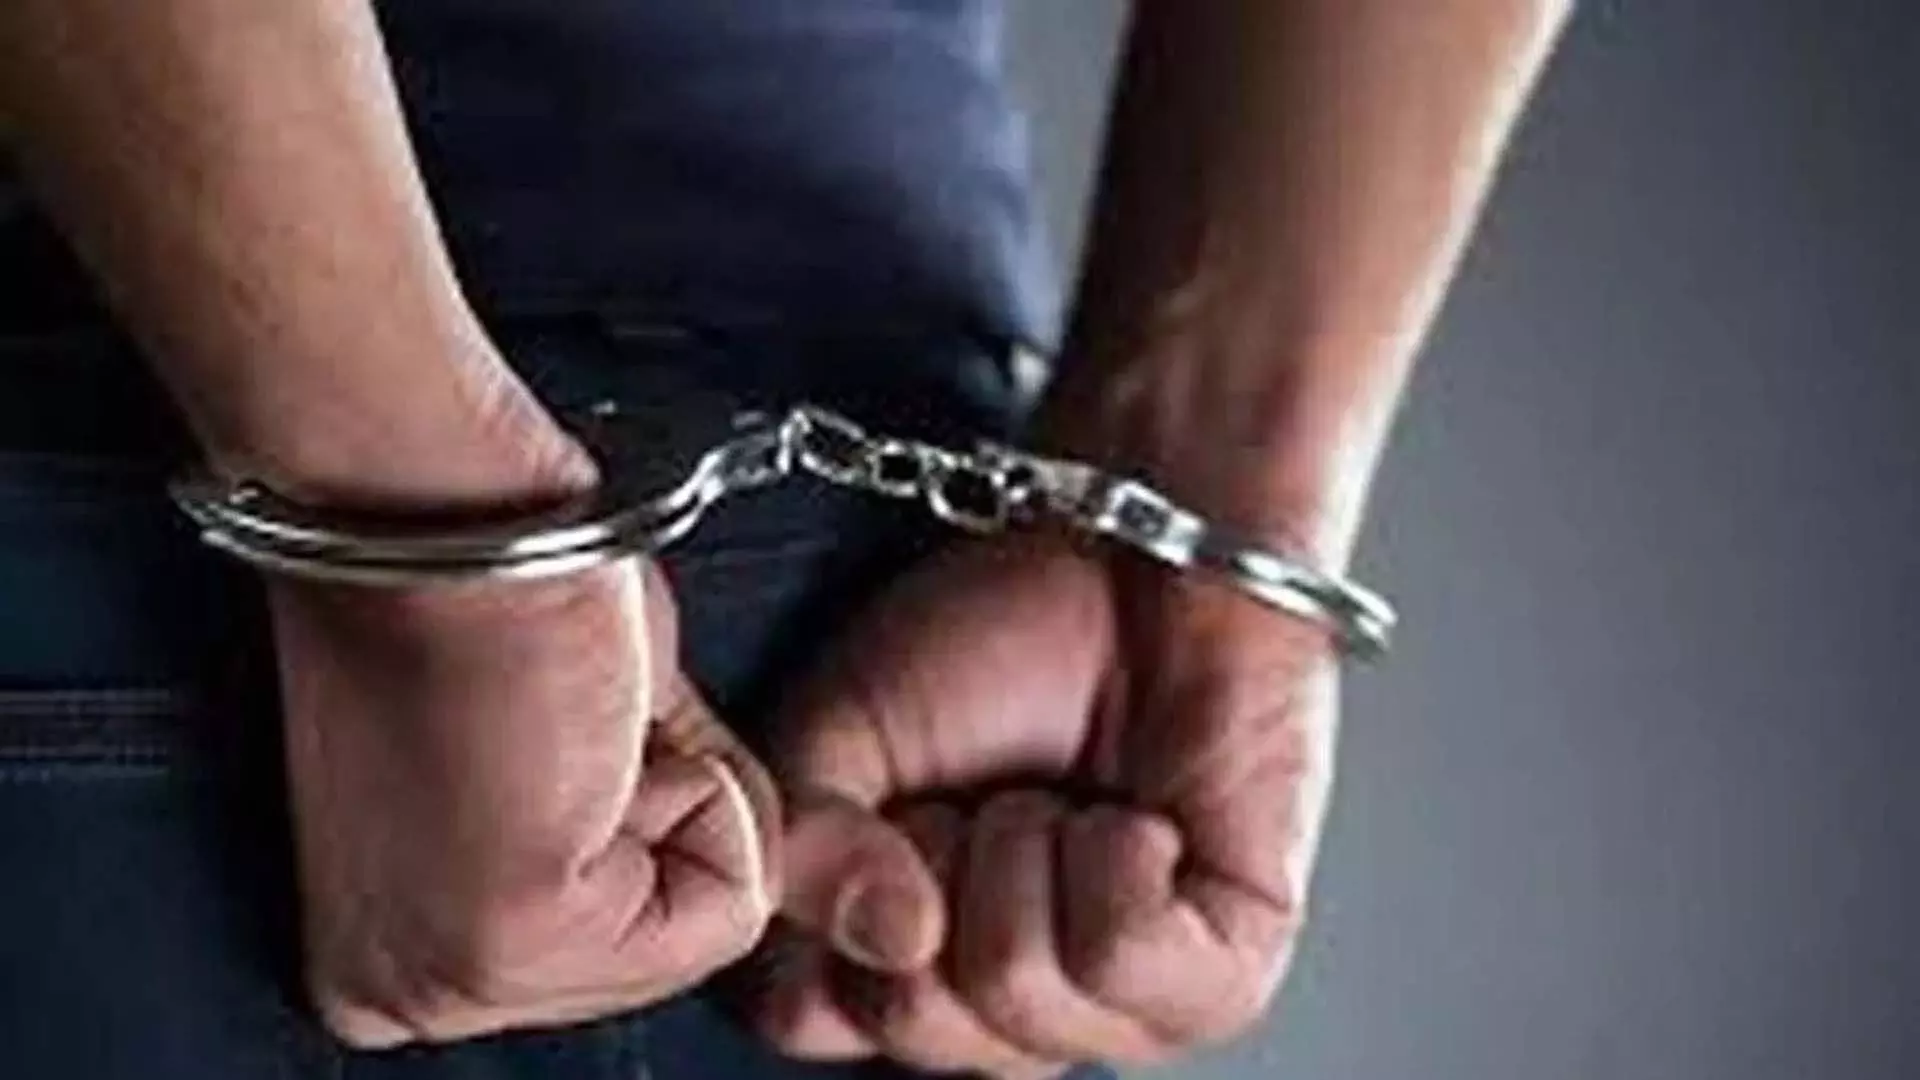 मणिपुर राइफल्स शस्त्रागार से हथियार लूटने के आरोप में 6 गिरफ्तार